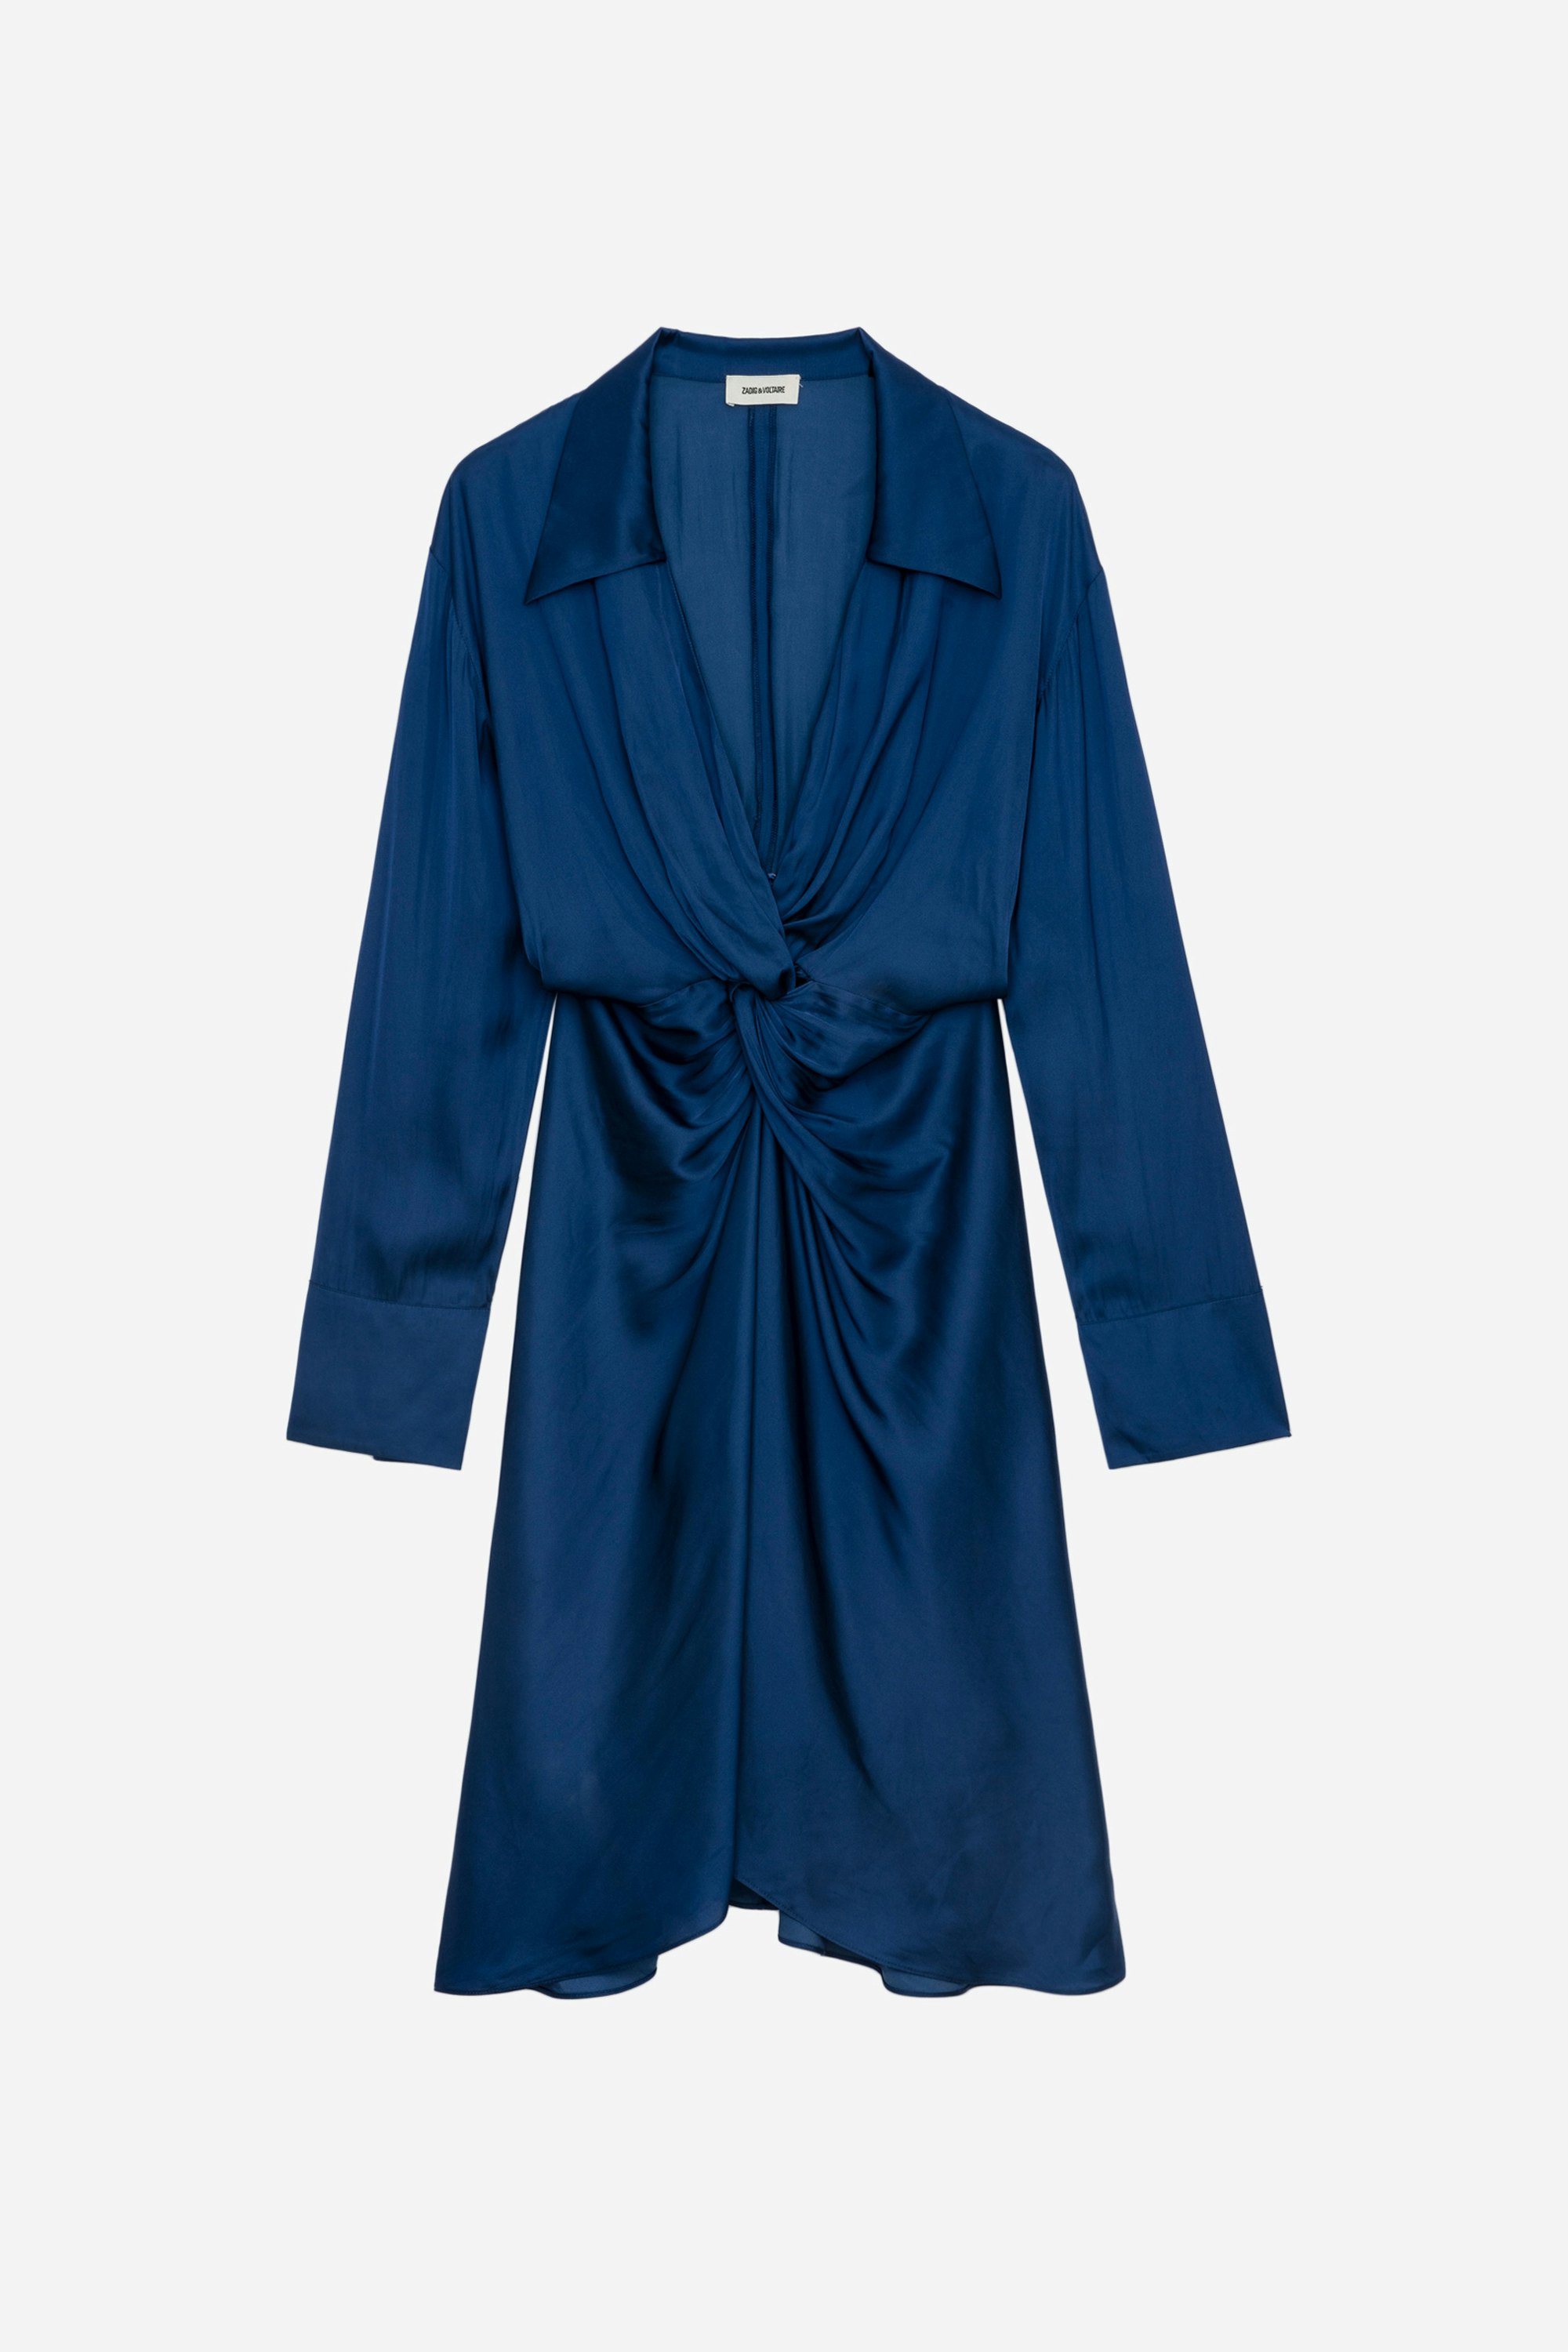 Vestido de Satén Rozo - Vestido azul real de satén de largo medio para mujer, drapeado en la cintura.